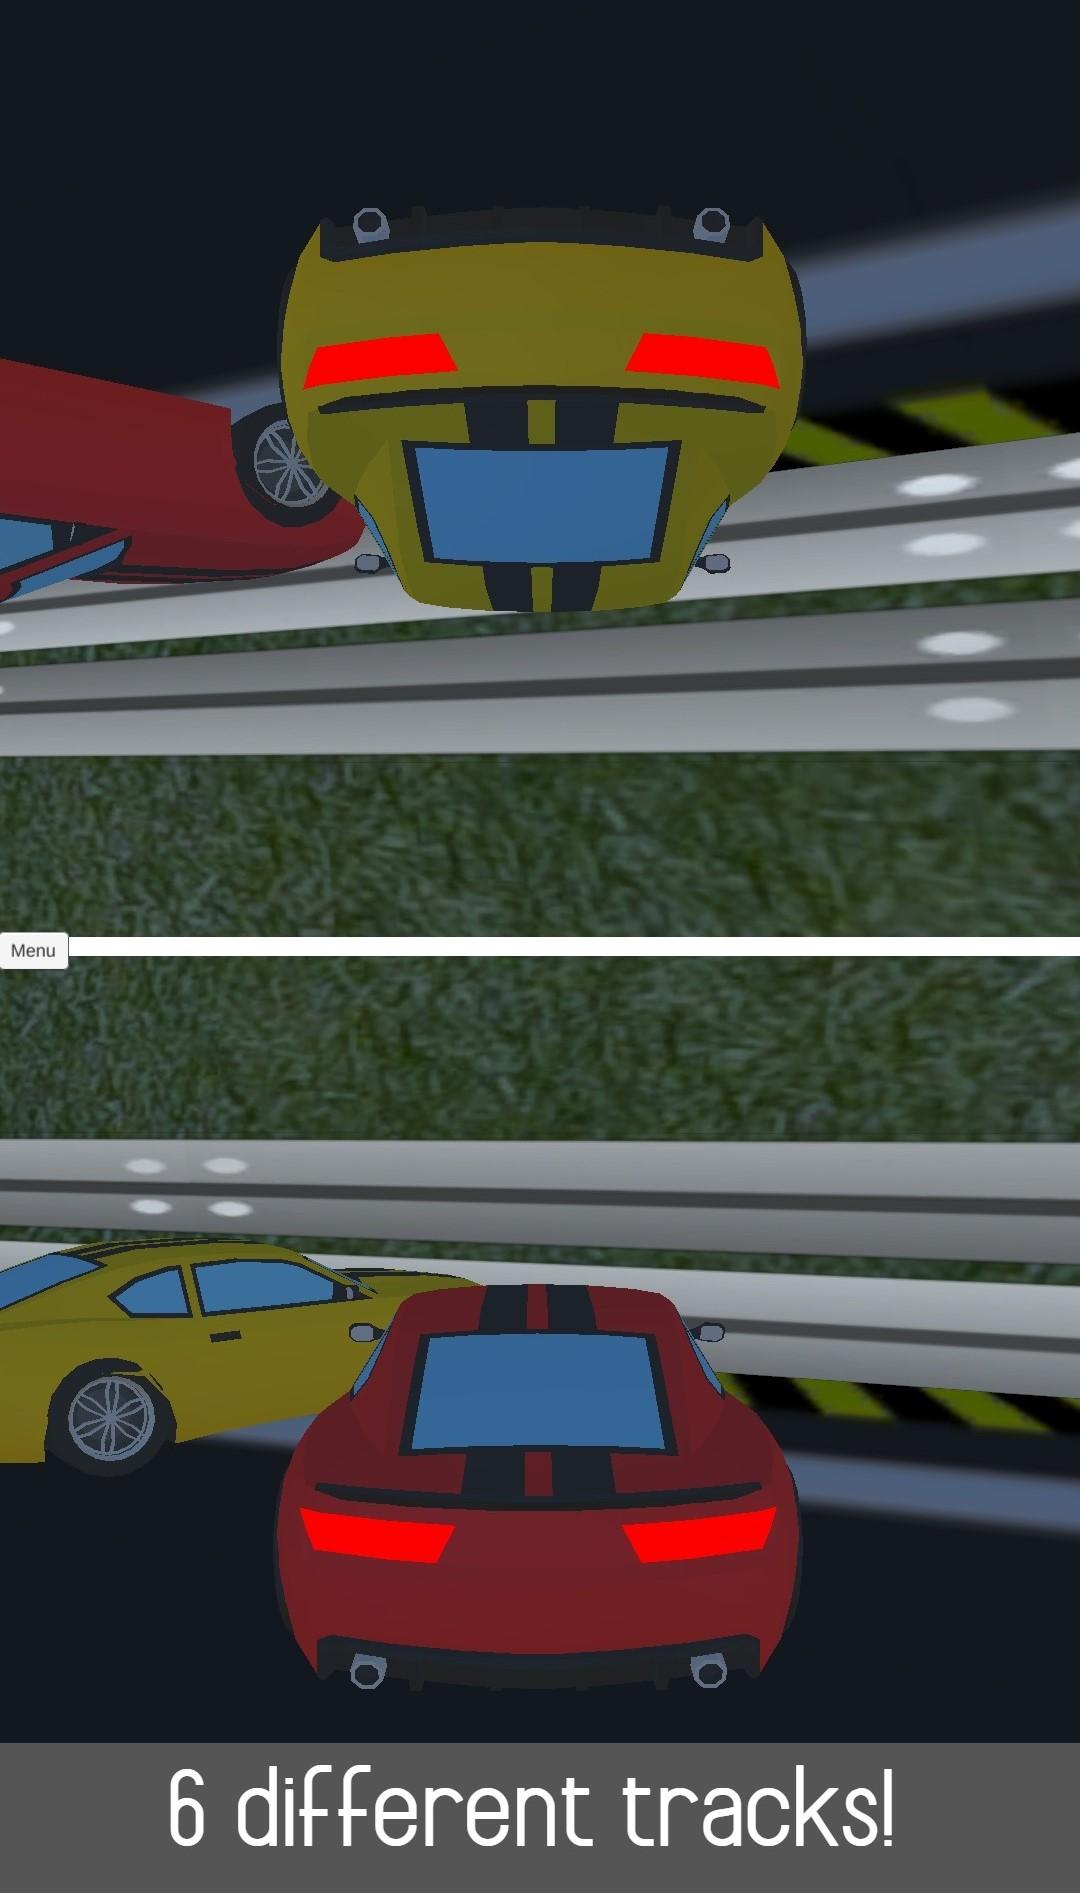 2 Player Racing 3D